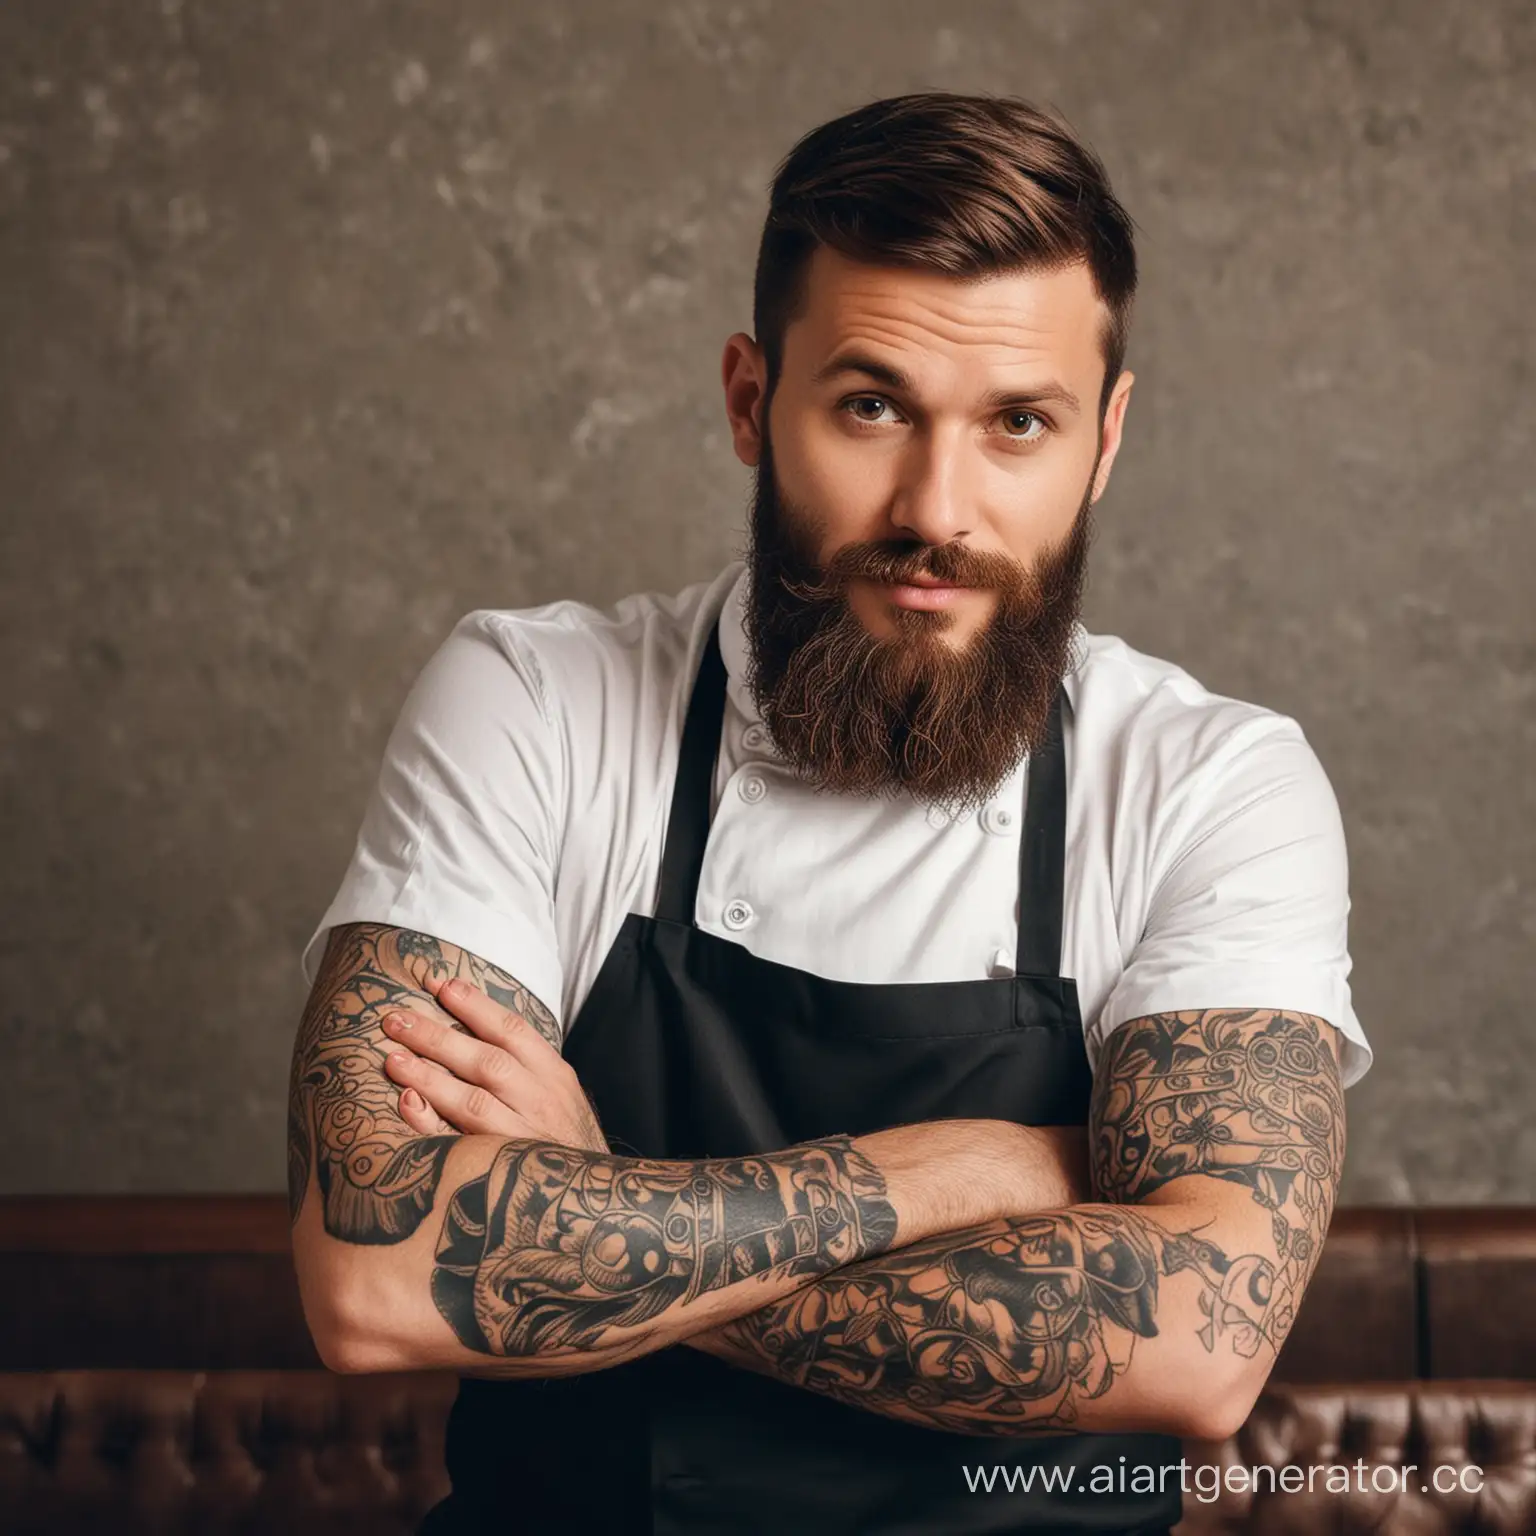 тридцатилетний мужчина, высокого роста, брюнет, с бородой,  руки в татуировках. Фанат белок, комиксов, работает поваром в лучшем ресторане Мюнхена. 